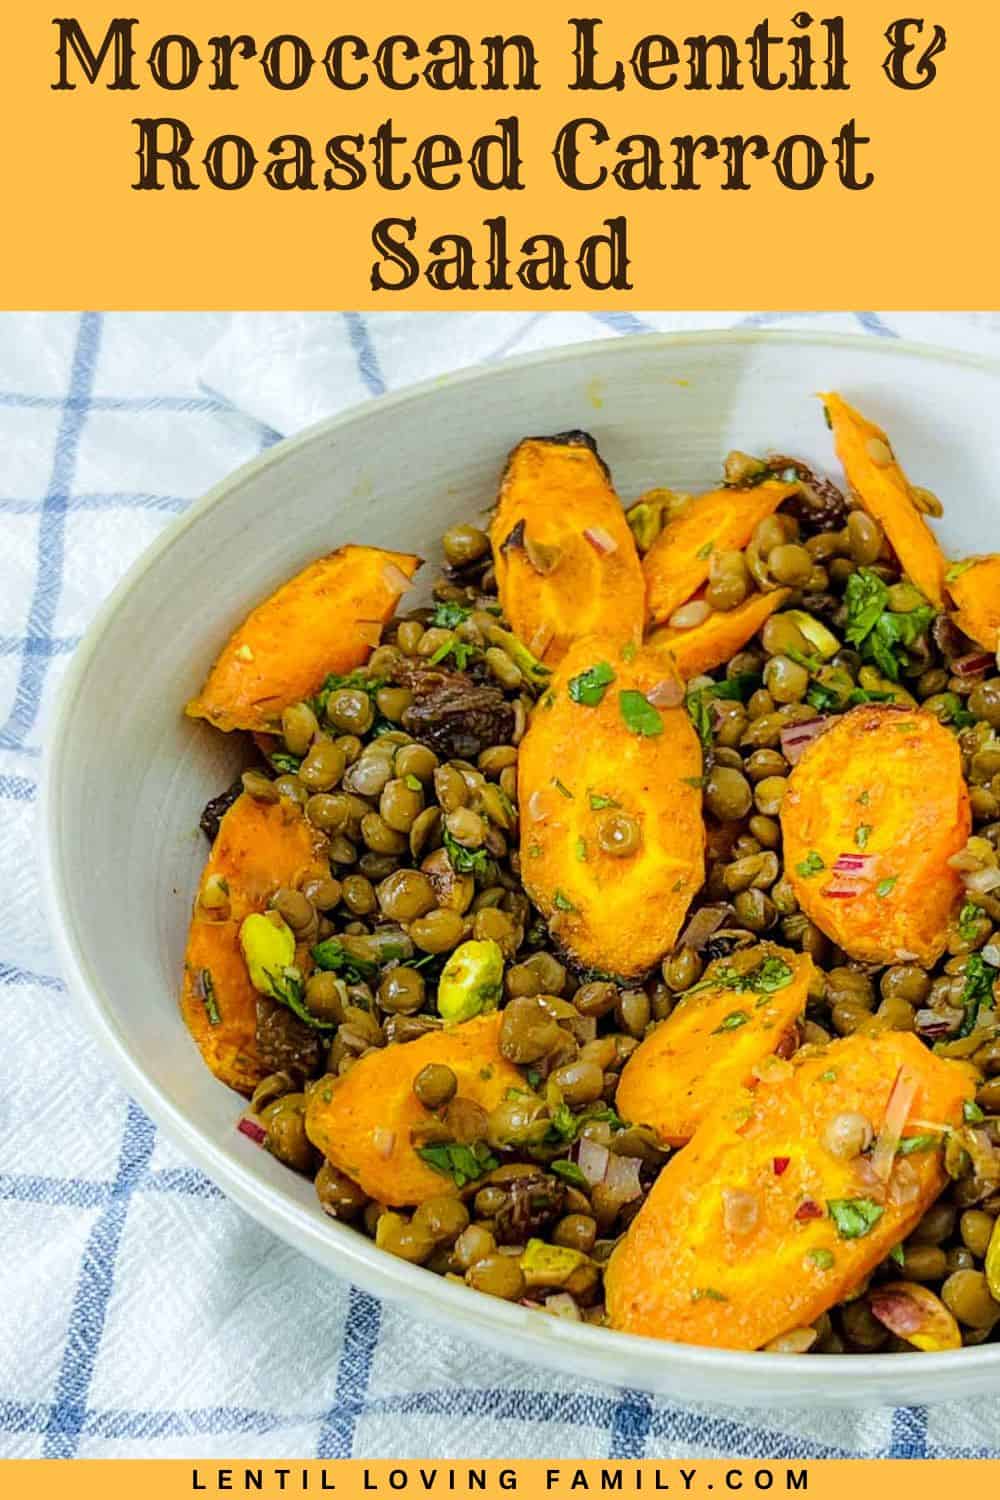 Moroccan lentil carrot salad Pinterest image.